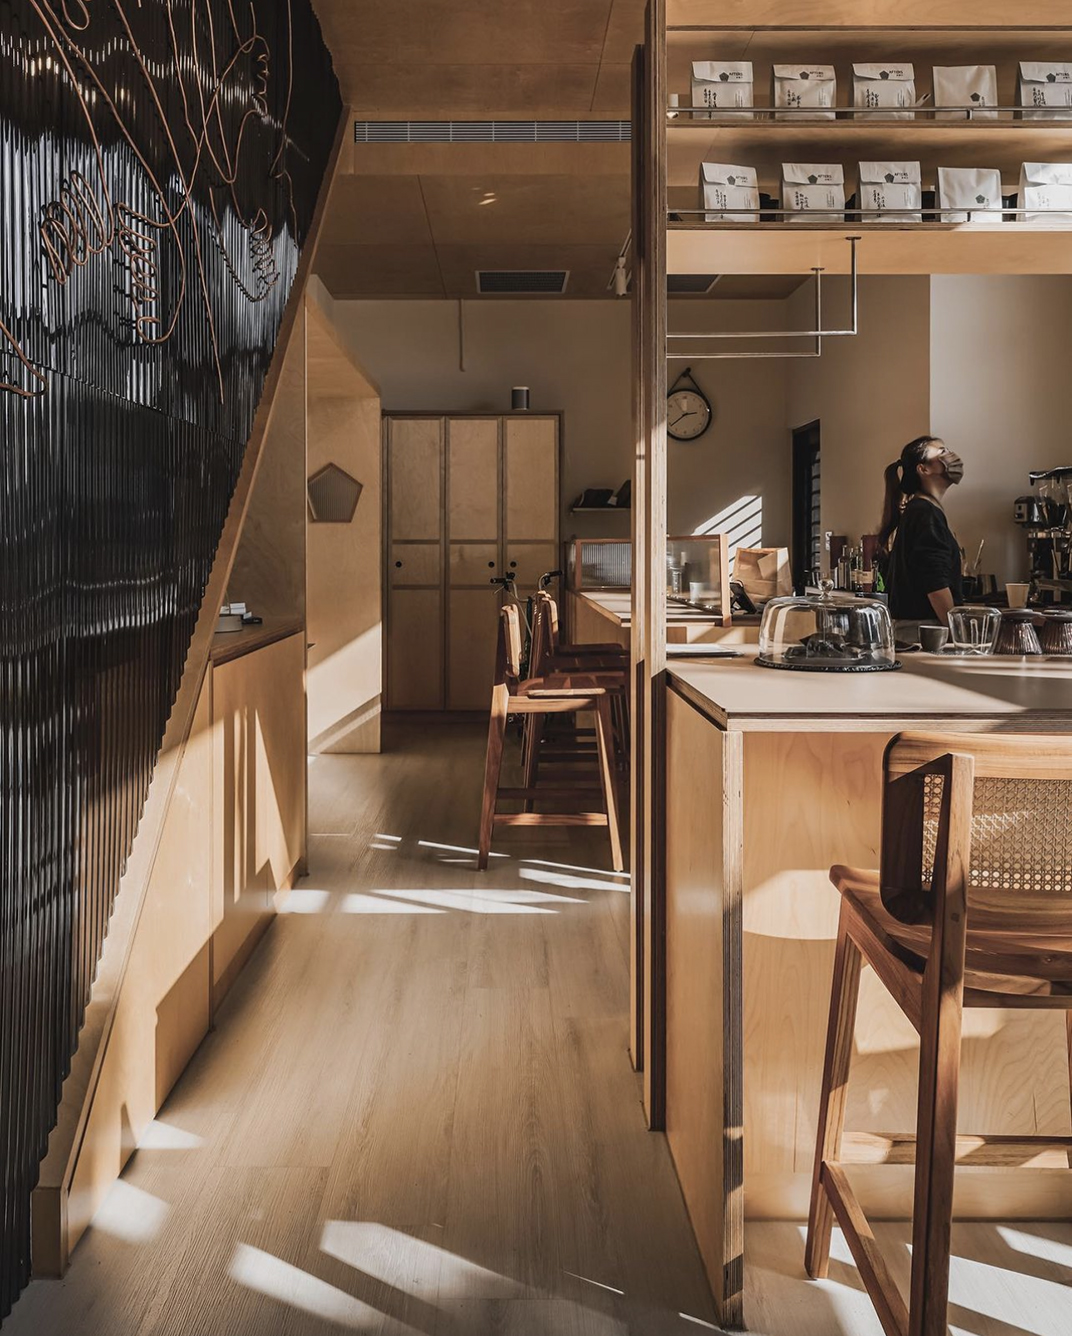 咖啡店After5步骤六龟山店 上海 杭州 成都 北京 台湾 咖啡店 木材 亚克力 logo设计 vi设计 空间设计